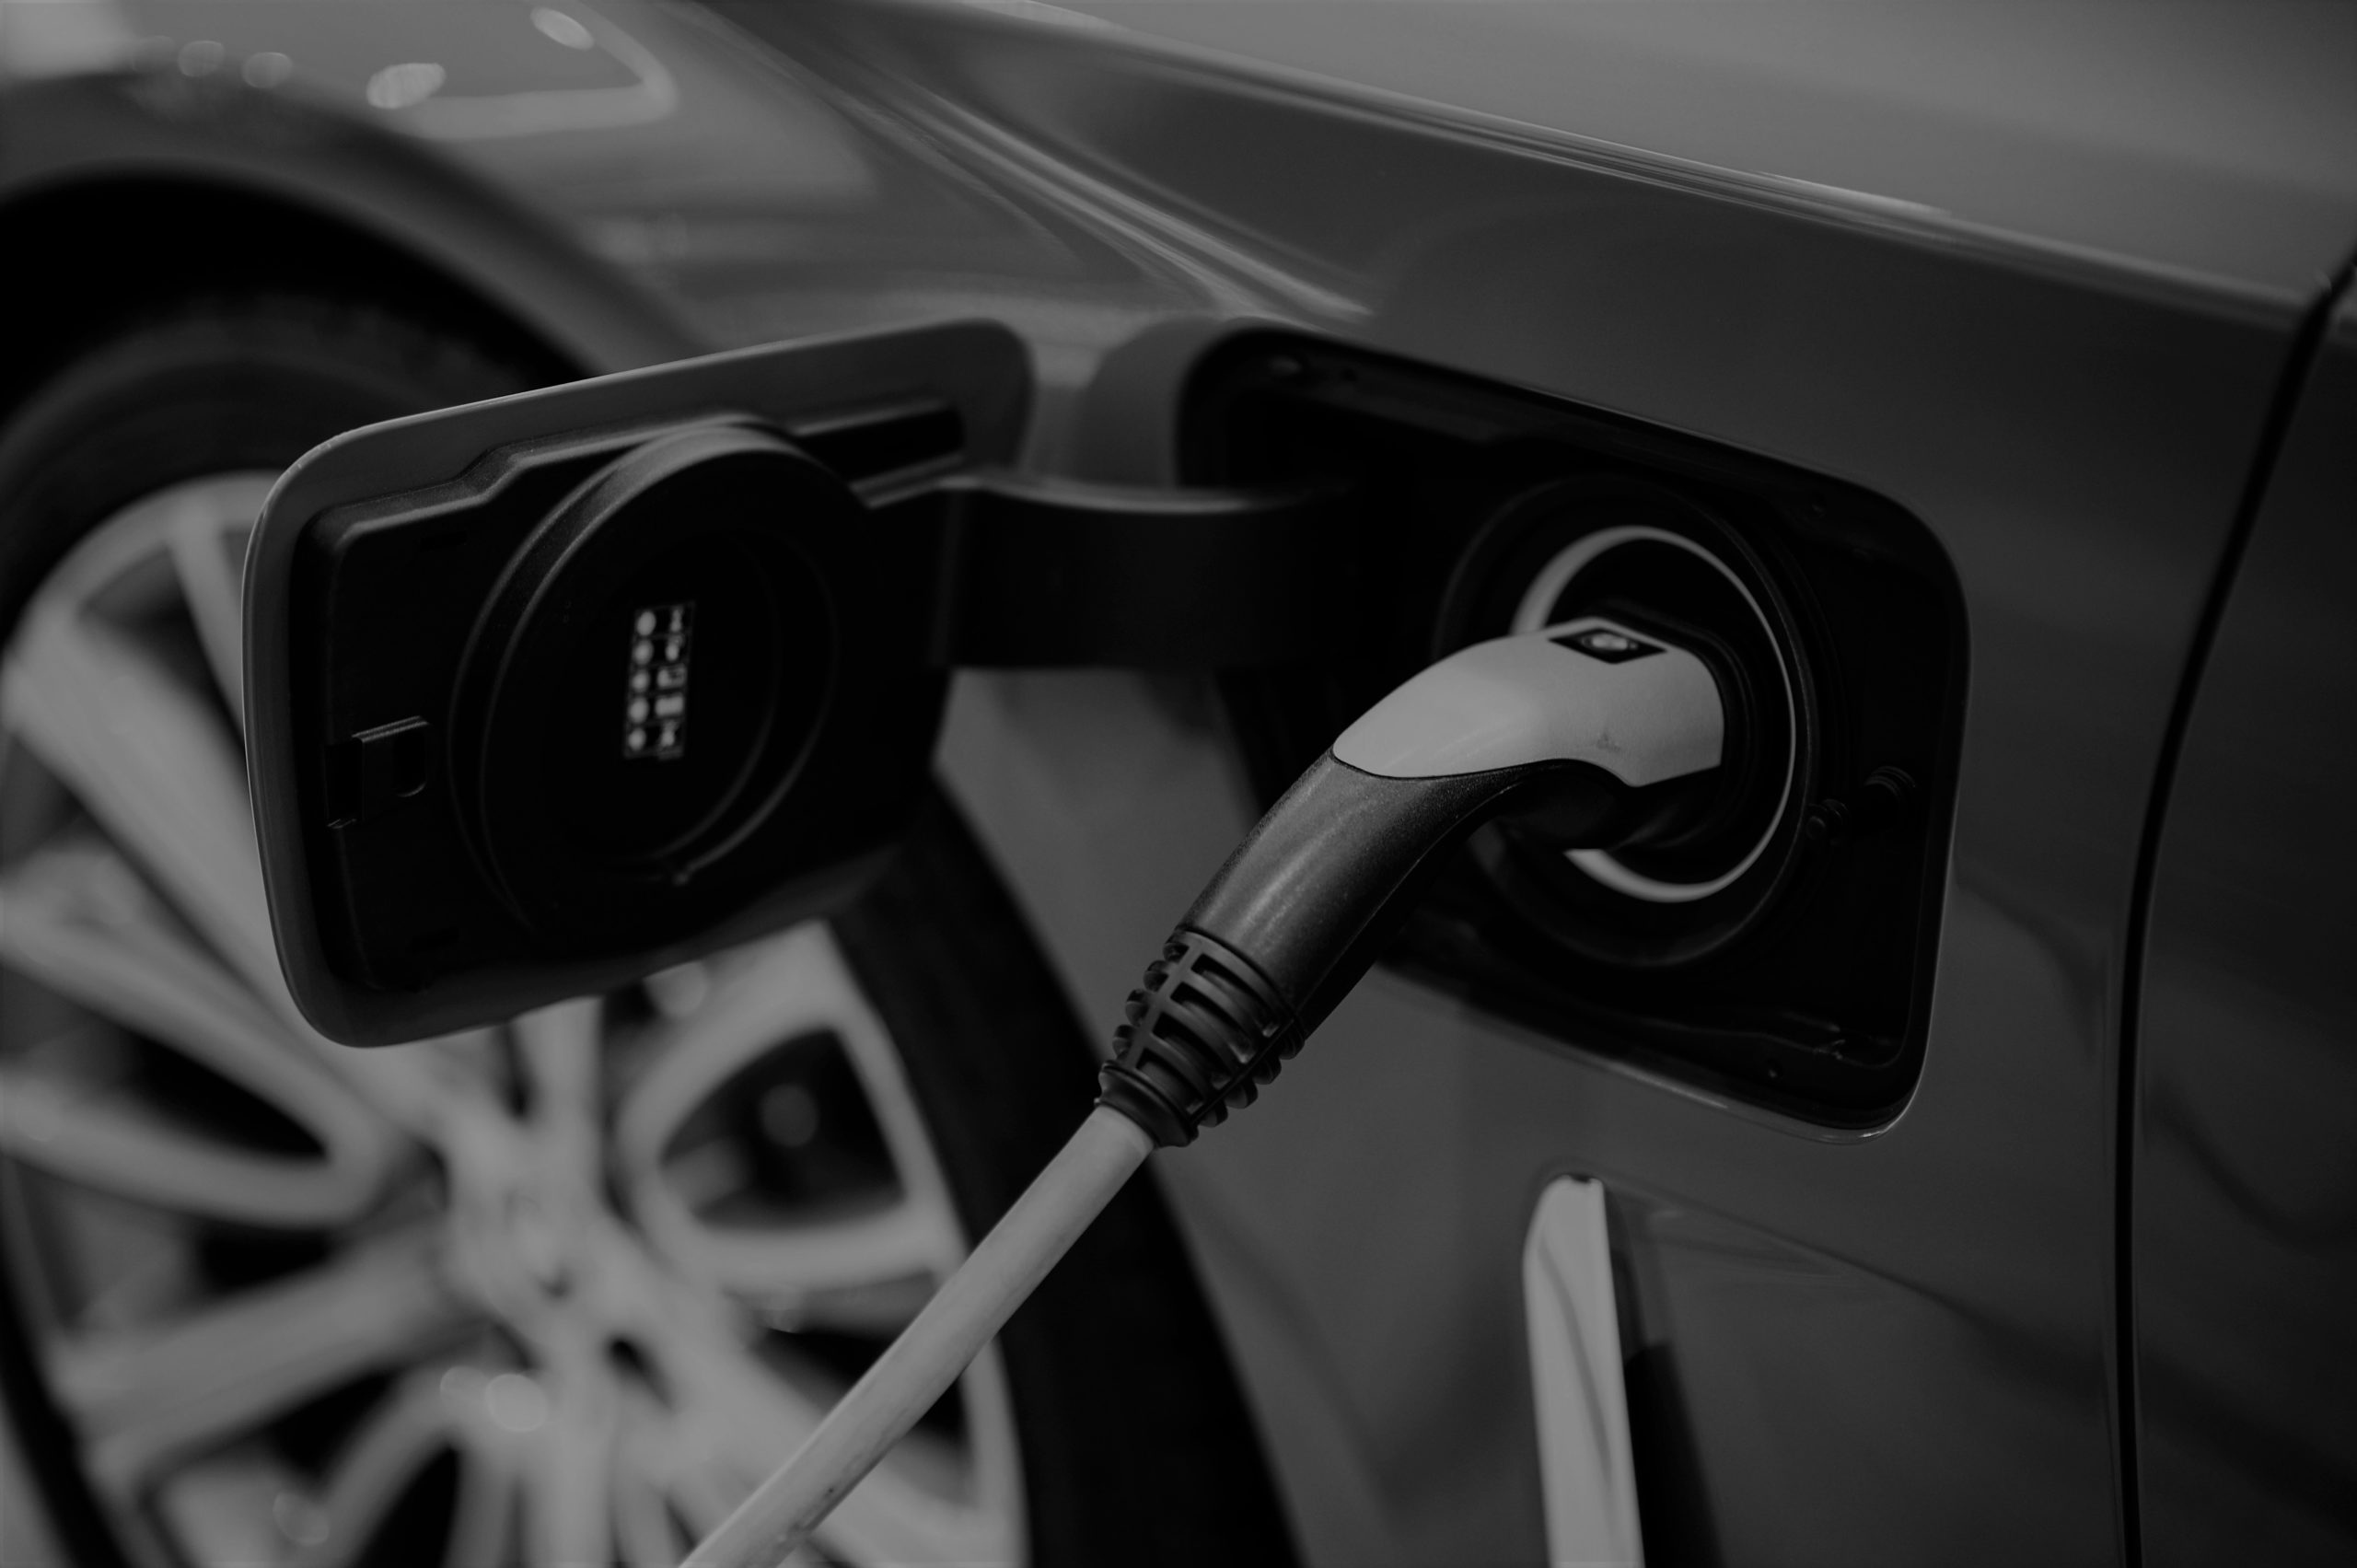 Station de recharge de véhicules électriques – TVA: nouvelle circulaire! 20 décembre 2021